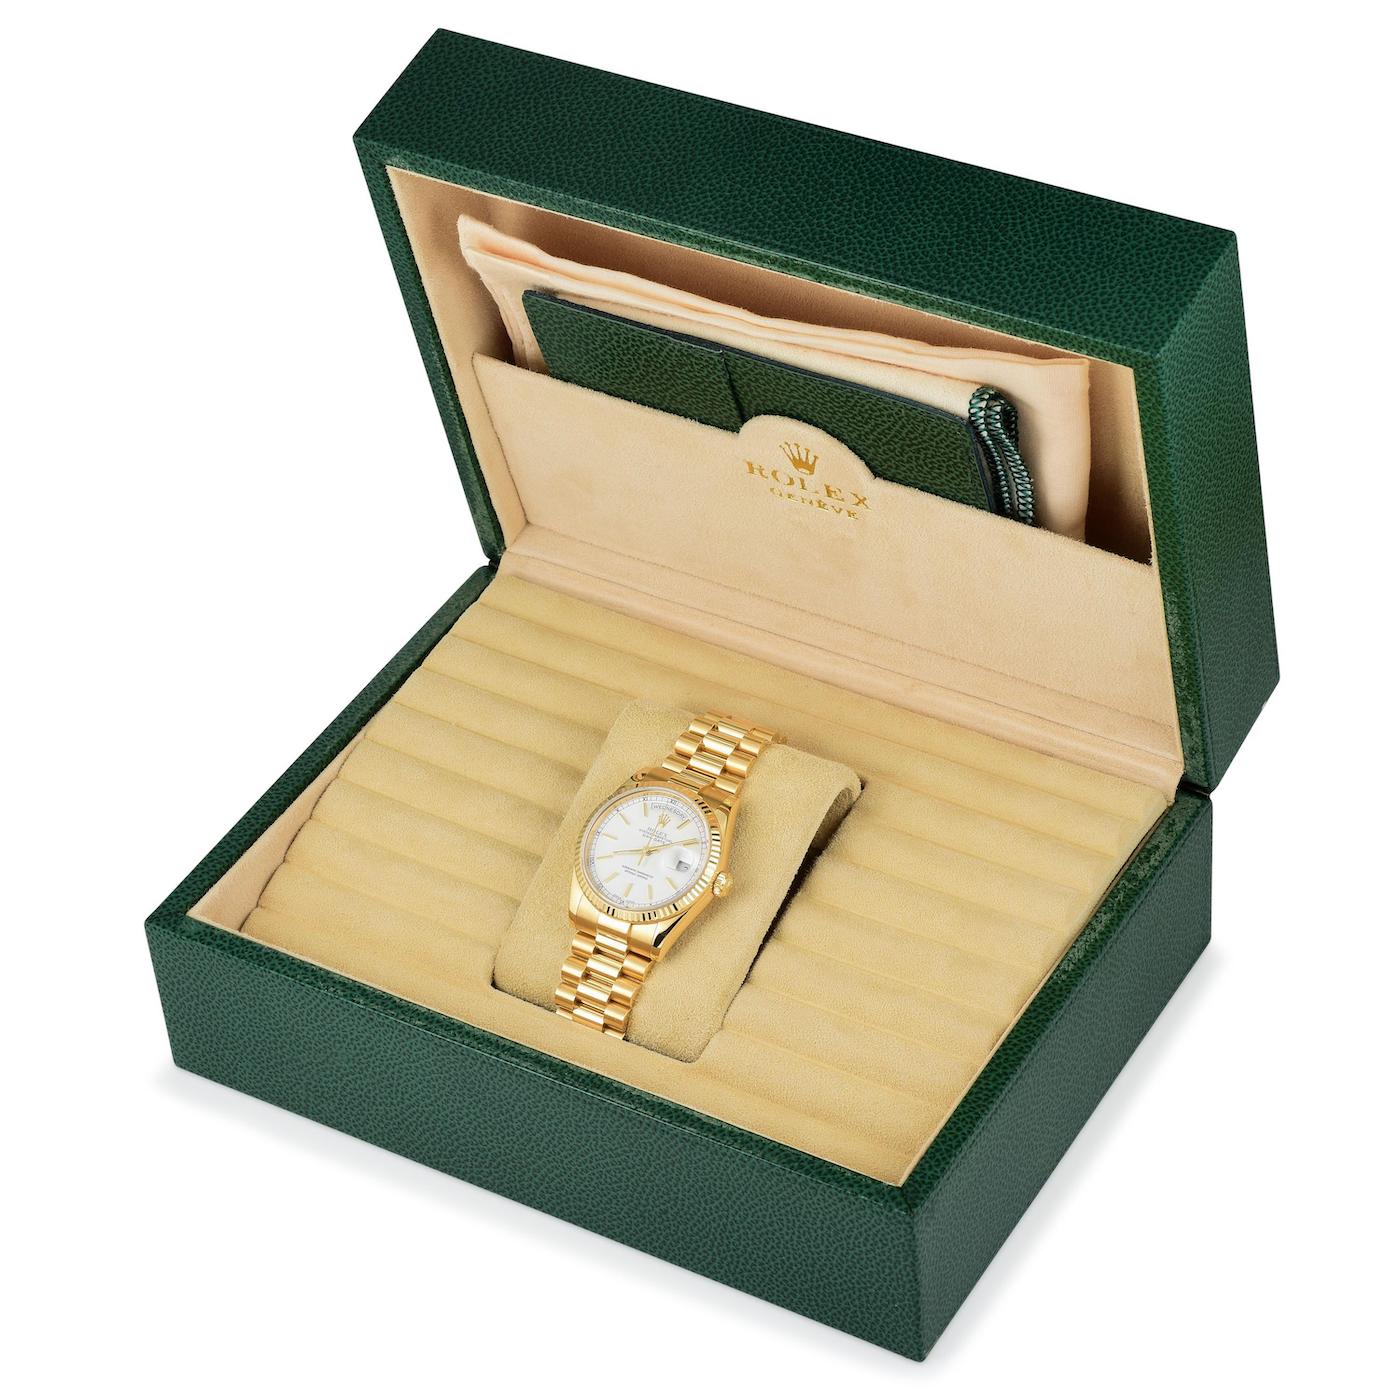 Fortuna-Auction-July-9-2019-Rolex-Patek-Philippe-Heuer-A-Lange-Und-Soehne-Watches